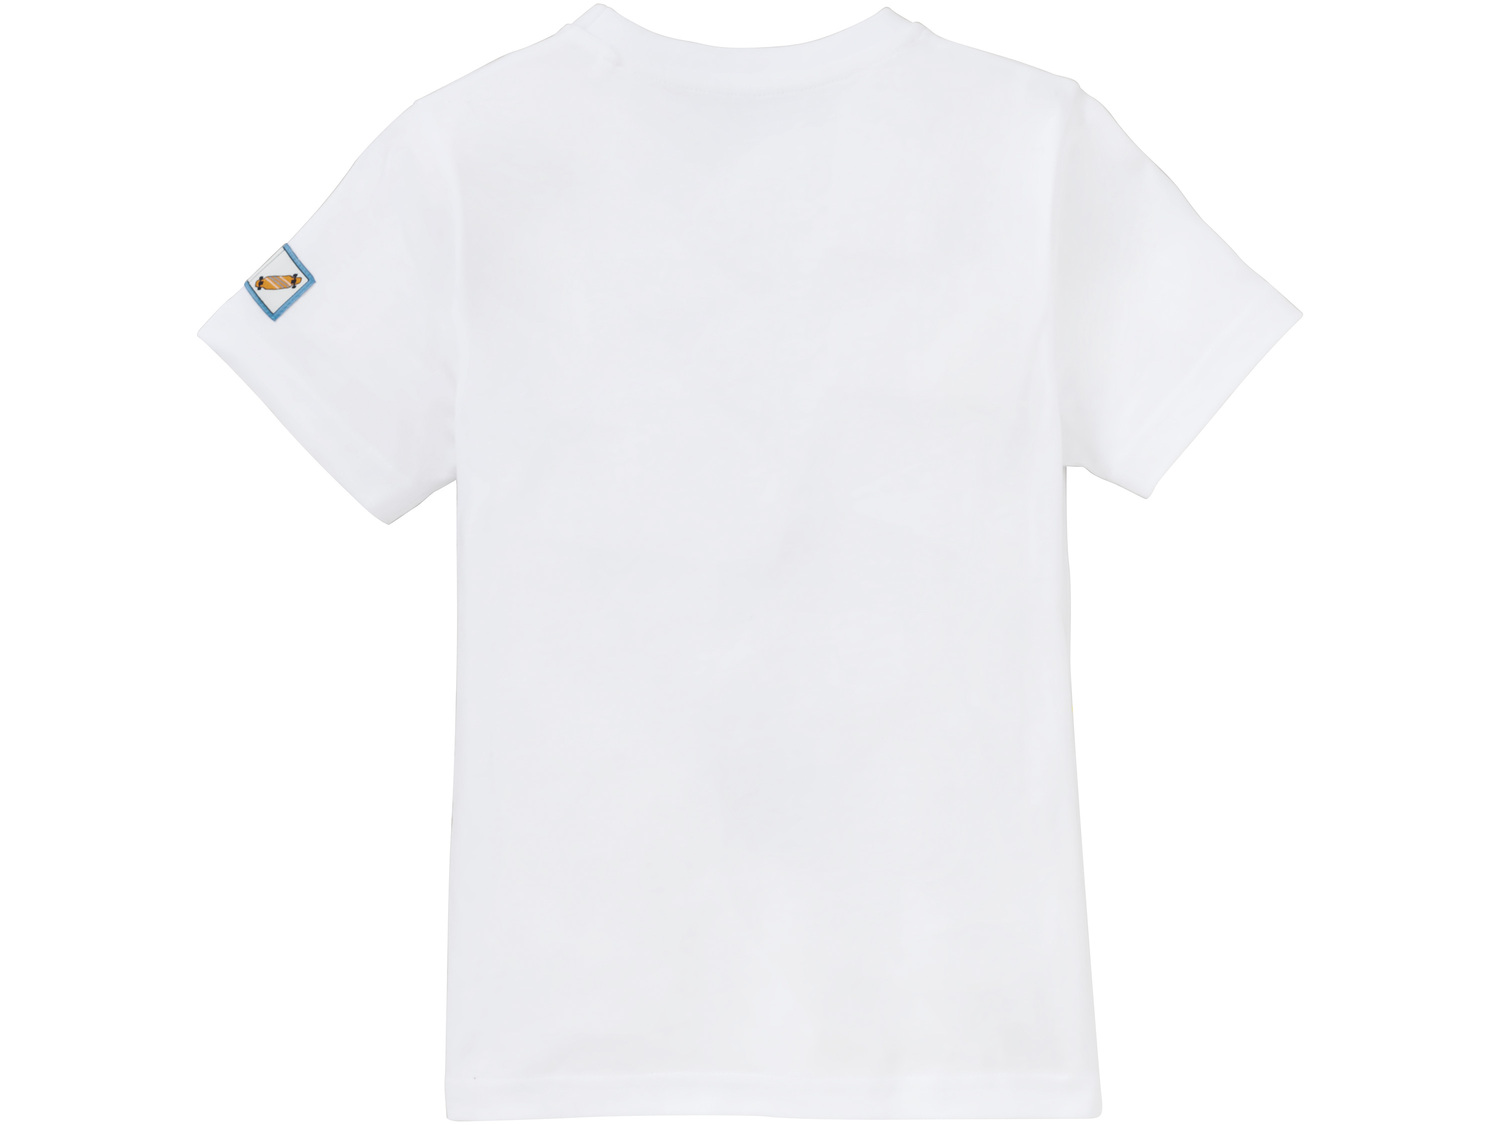 T-shirt chłopięcy z bawełny Pepperts, cena 14,99 PLN 
- rozmiary: 146-176
- 100% ...